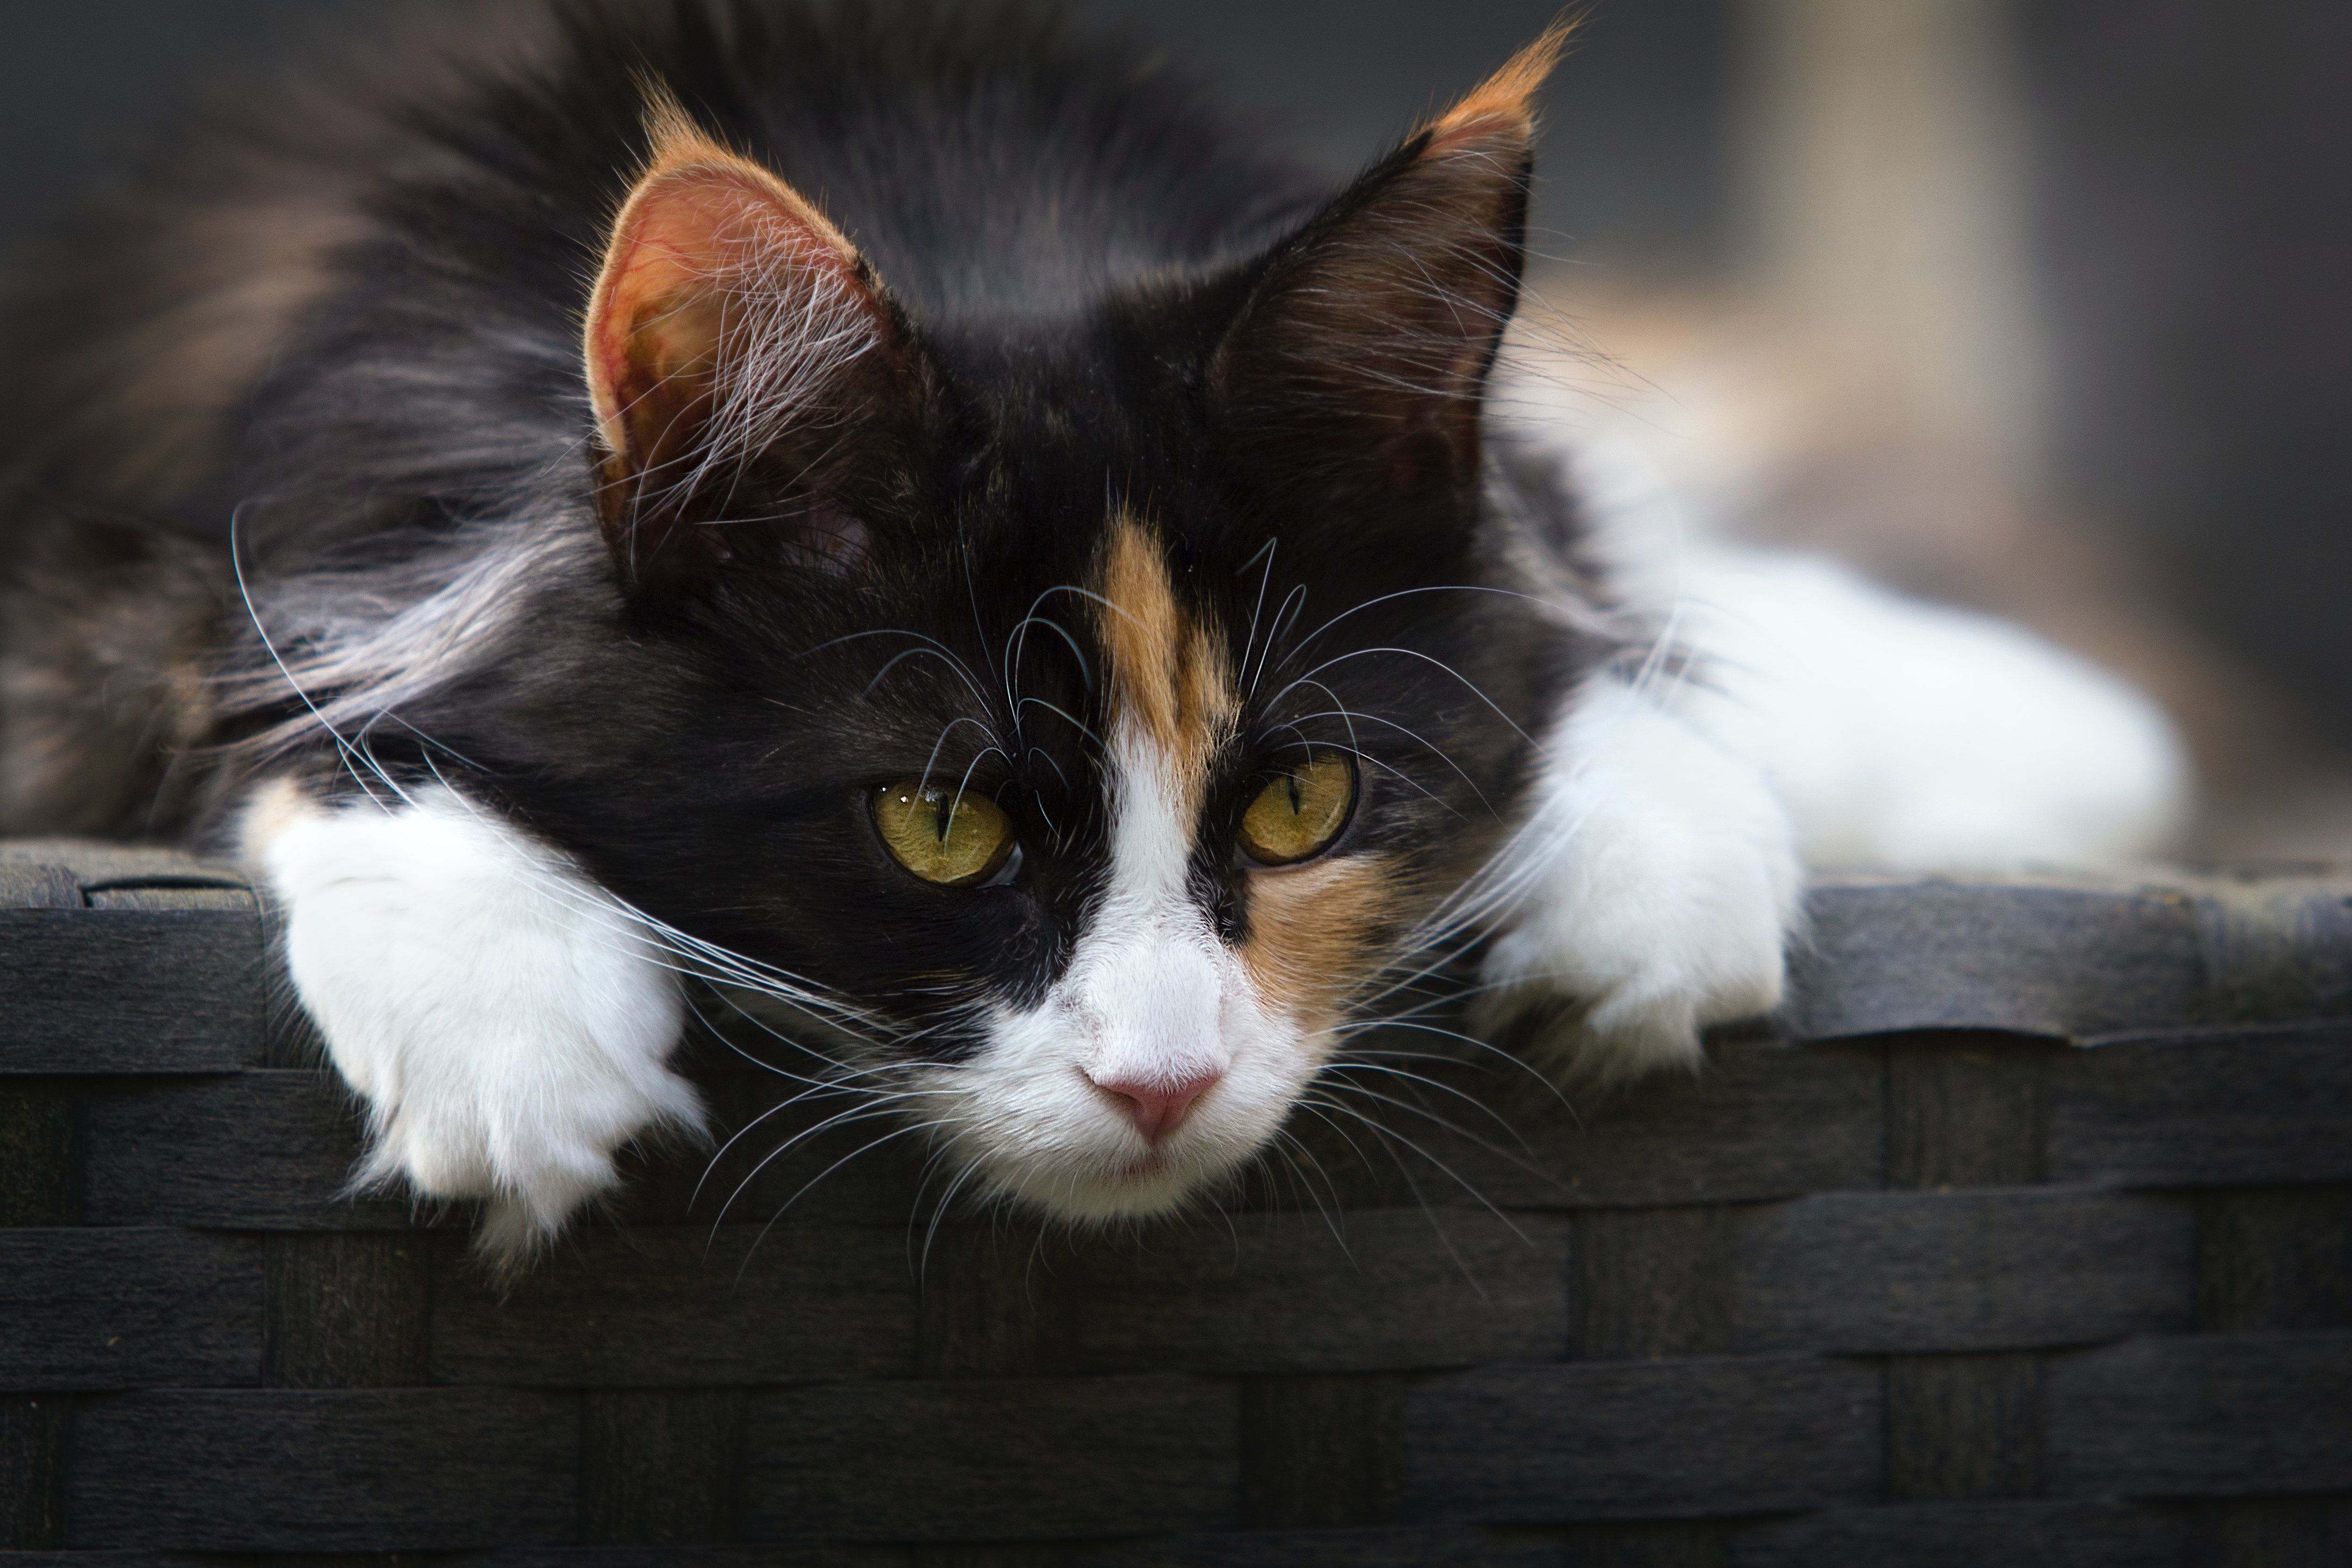 Focus Photo of Calico Cat · Free